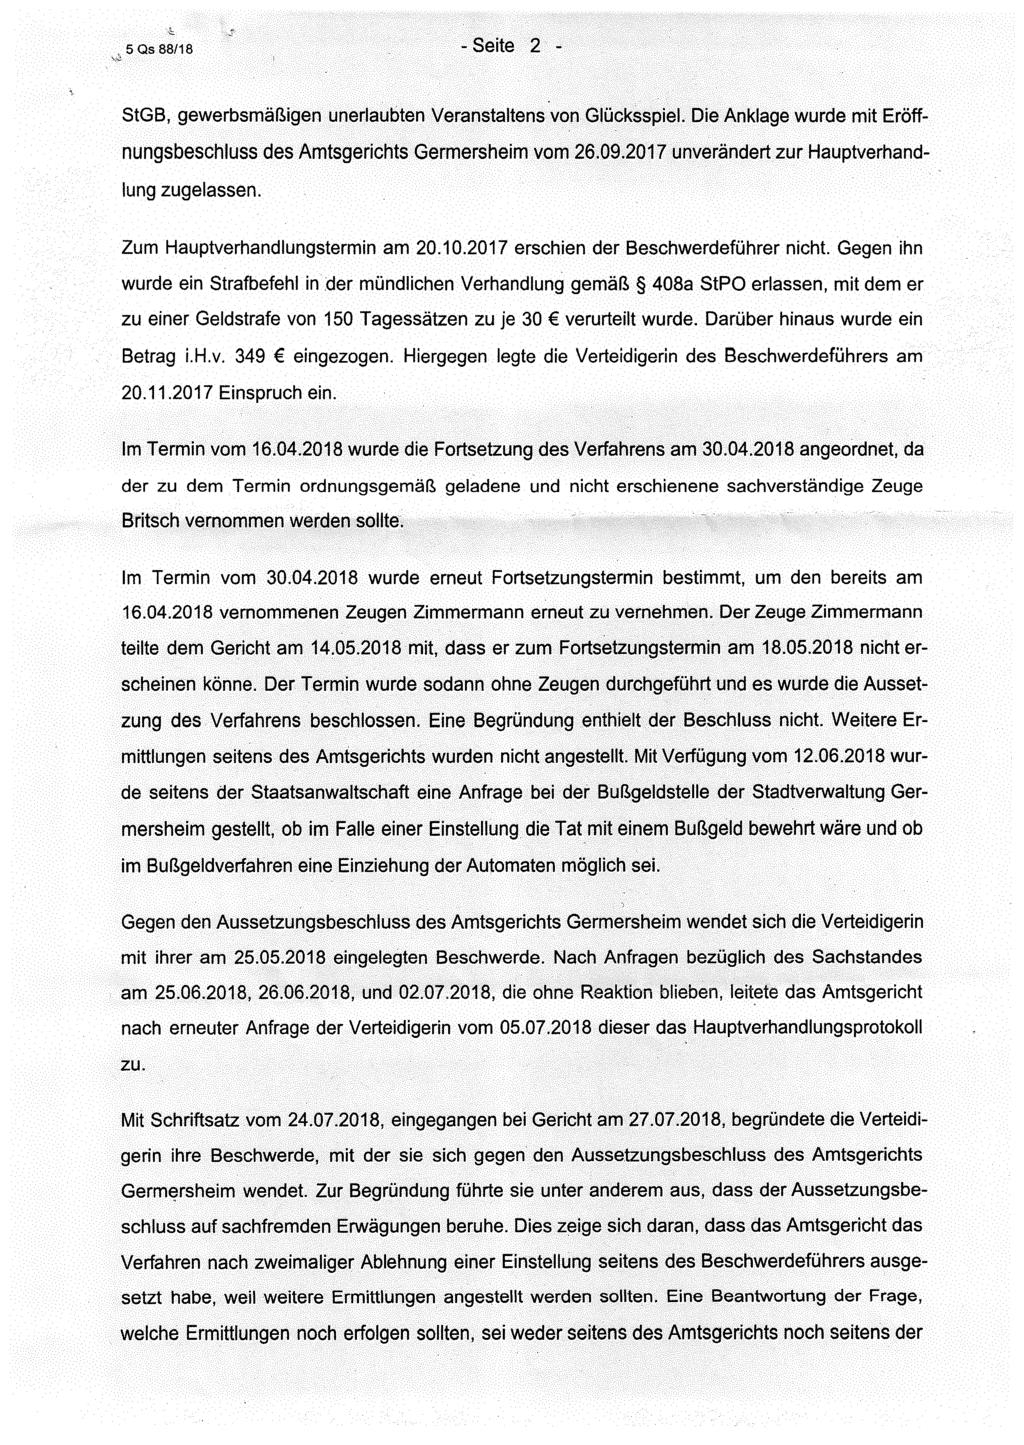 5Qs88/18 - Seite 2 - StGB, gewerbsmäßigen unerlaubten Veranstaltens von Glücksspiel. Die Anklage wurde mit Eröffnungsbeschluss des Amtsgerichts Germersheim vom 26.09.